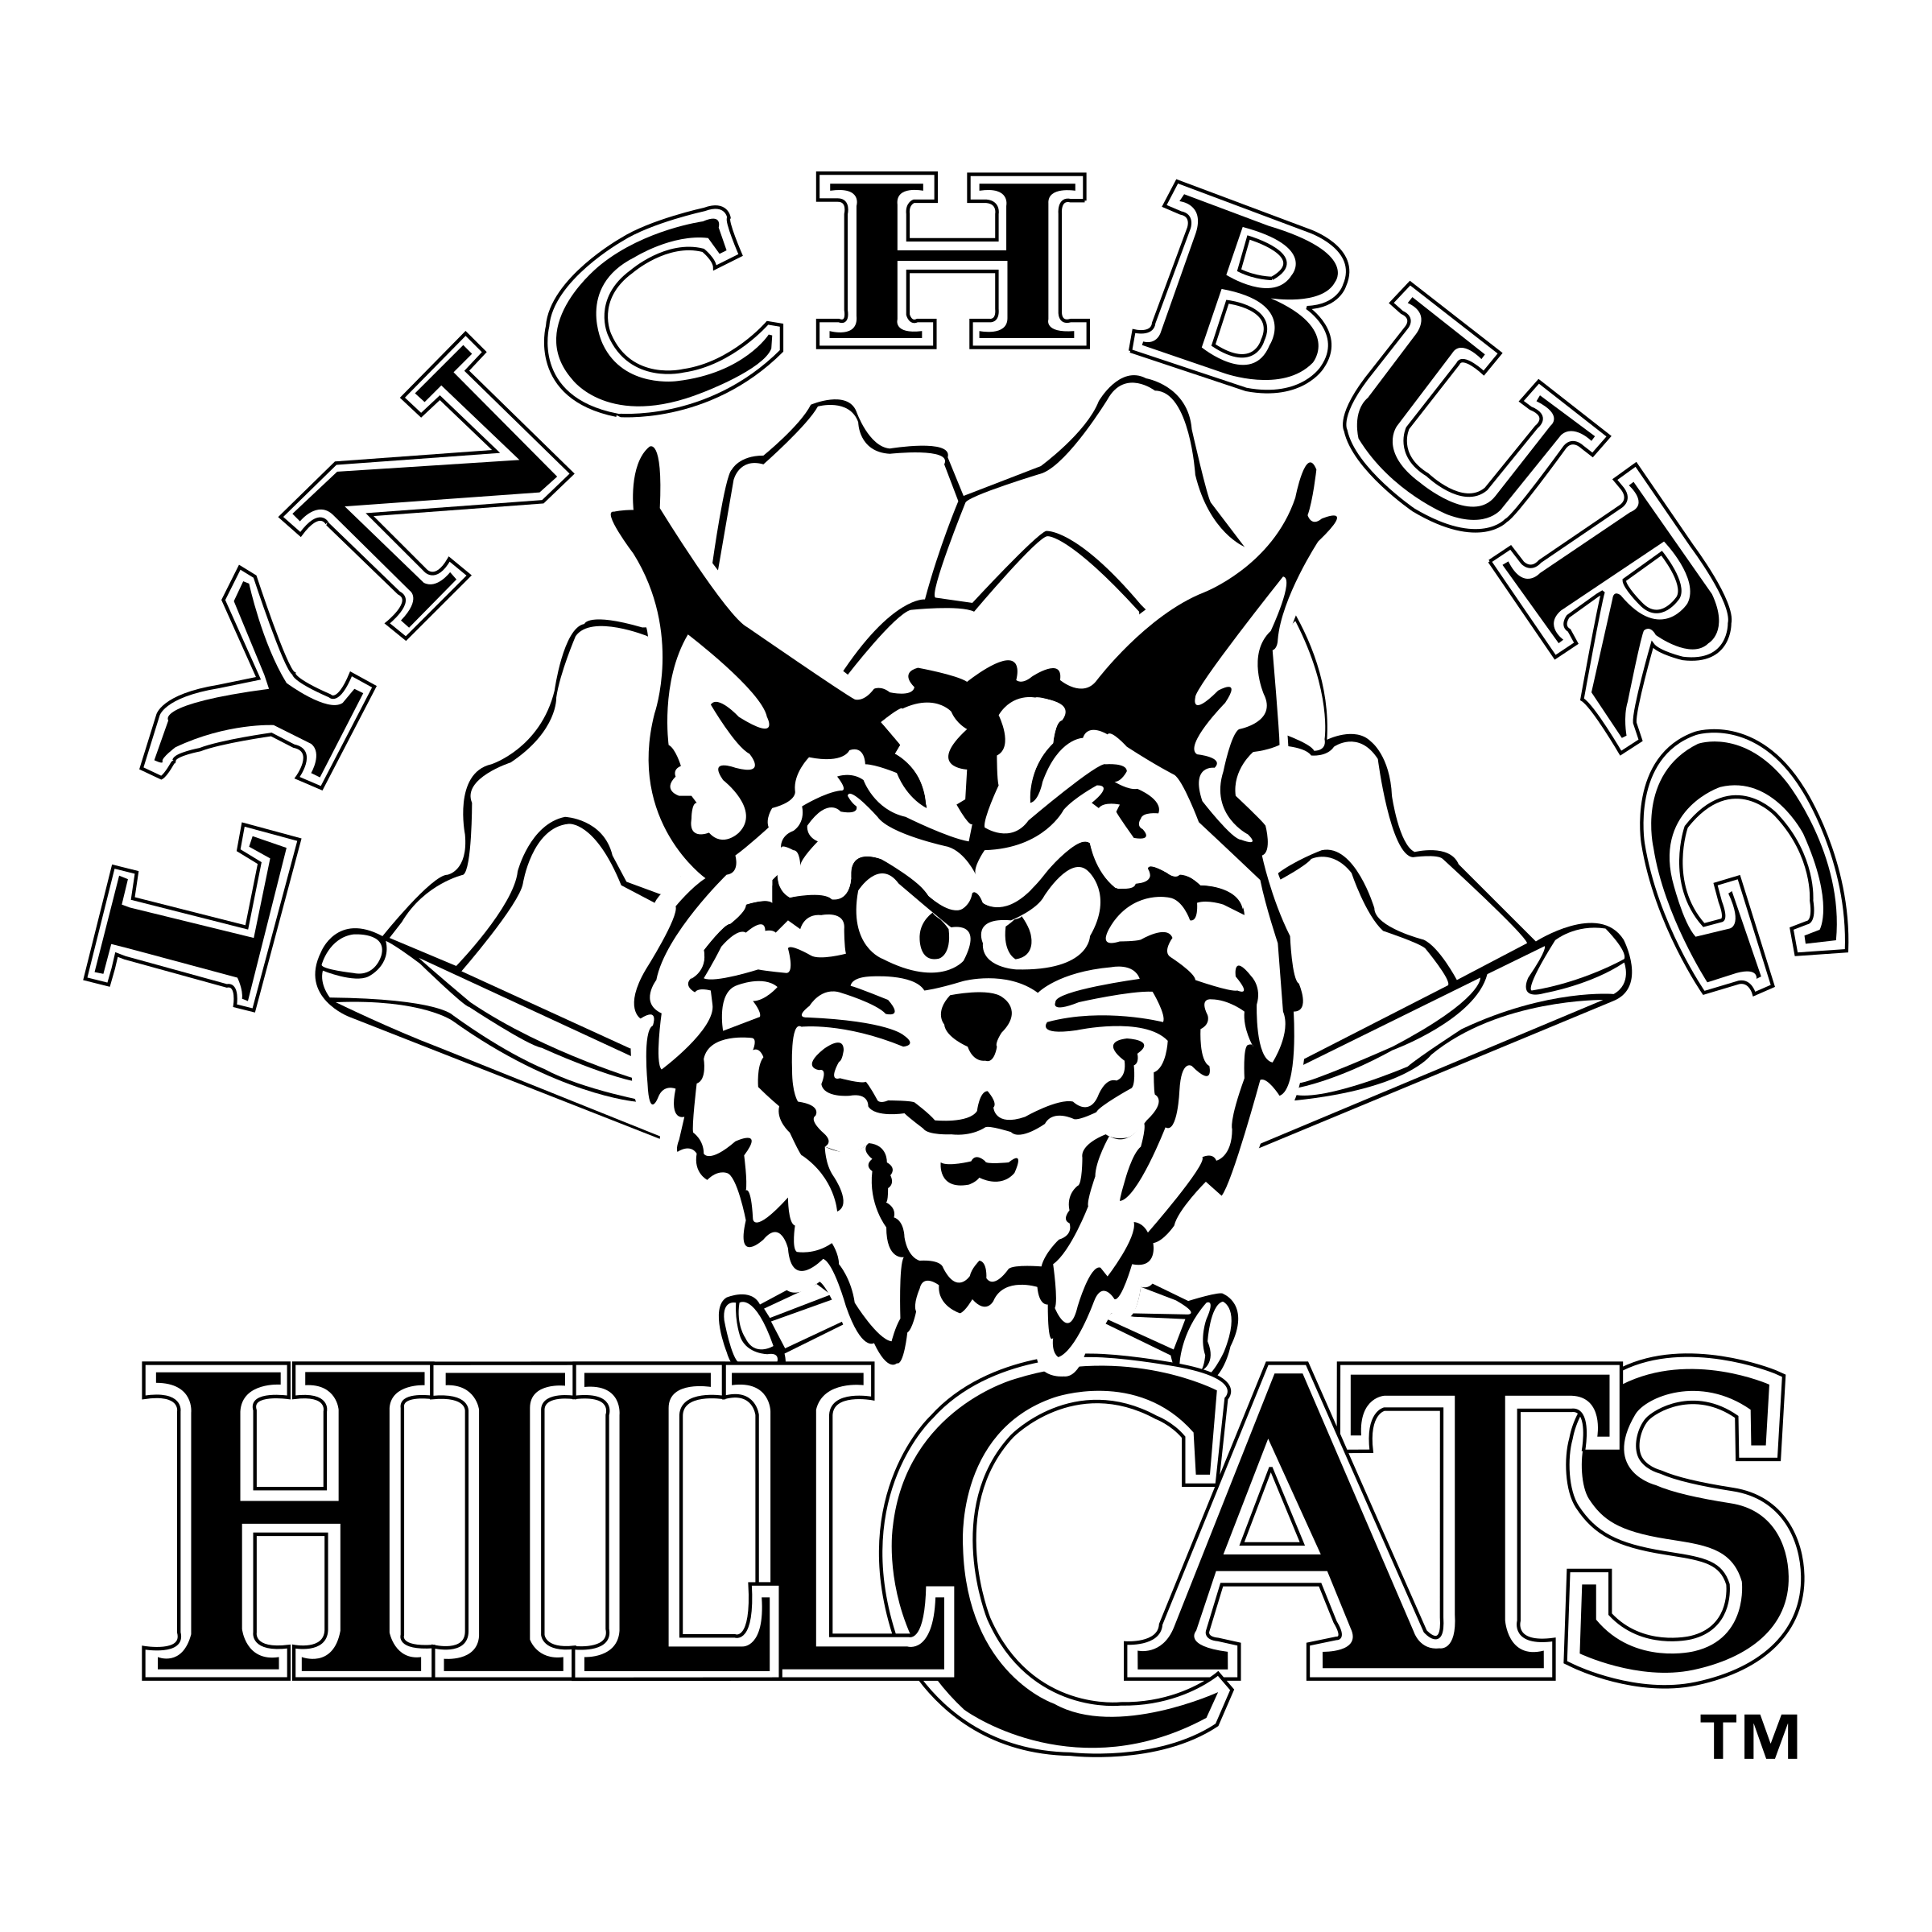 Lynchburg Hillcats PNG HD Quality